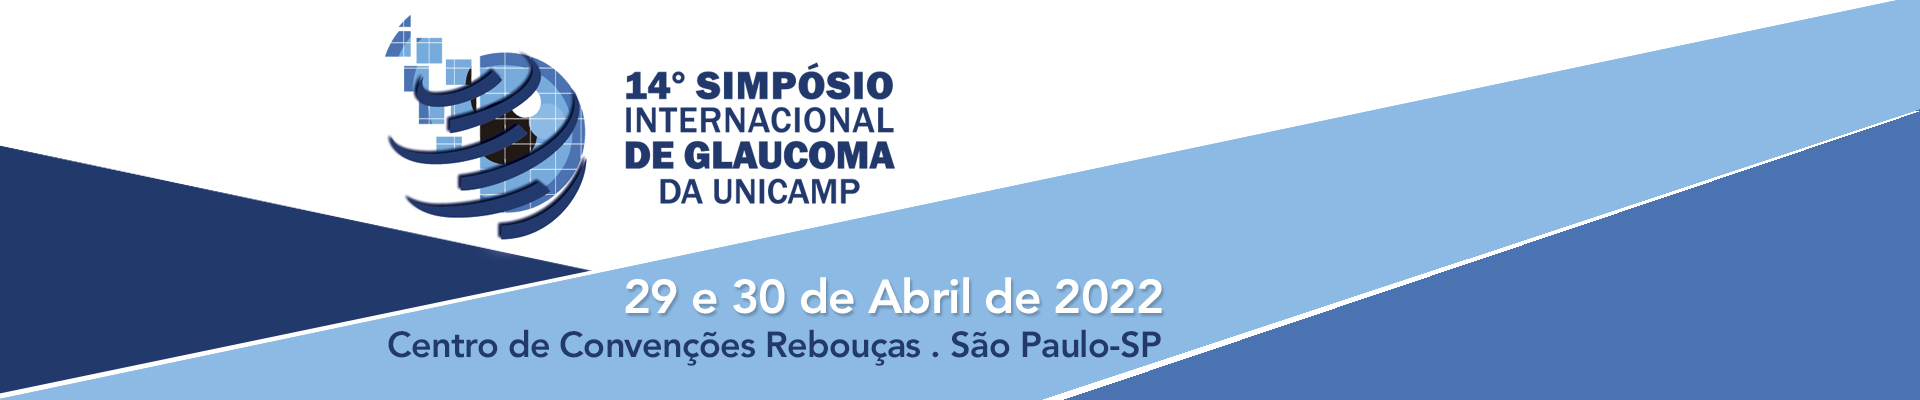 14º Simpósio Internacional de Glaucoma UNICAMP 2022